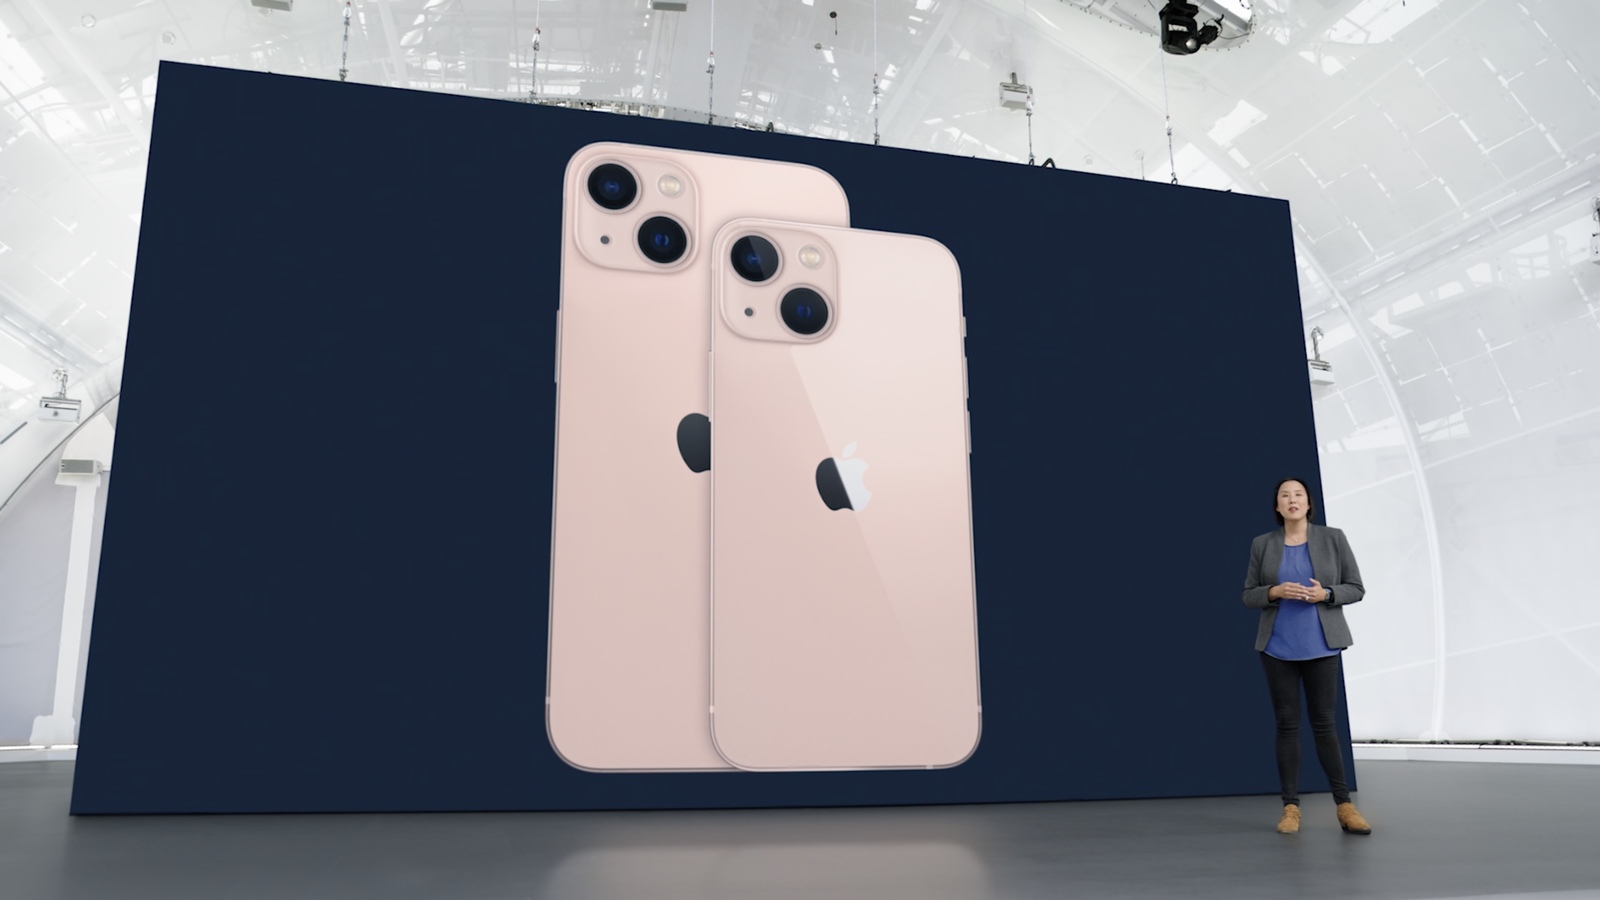 Trọn bộ combo màu sắc của iPhone 13: Lạ lẫm với 2 màu mới siêu bánh bèo - Hình 3